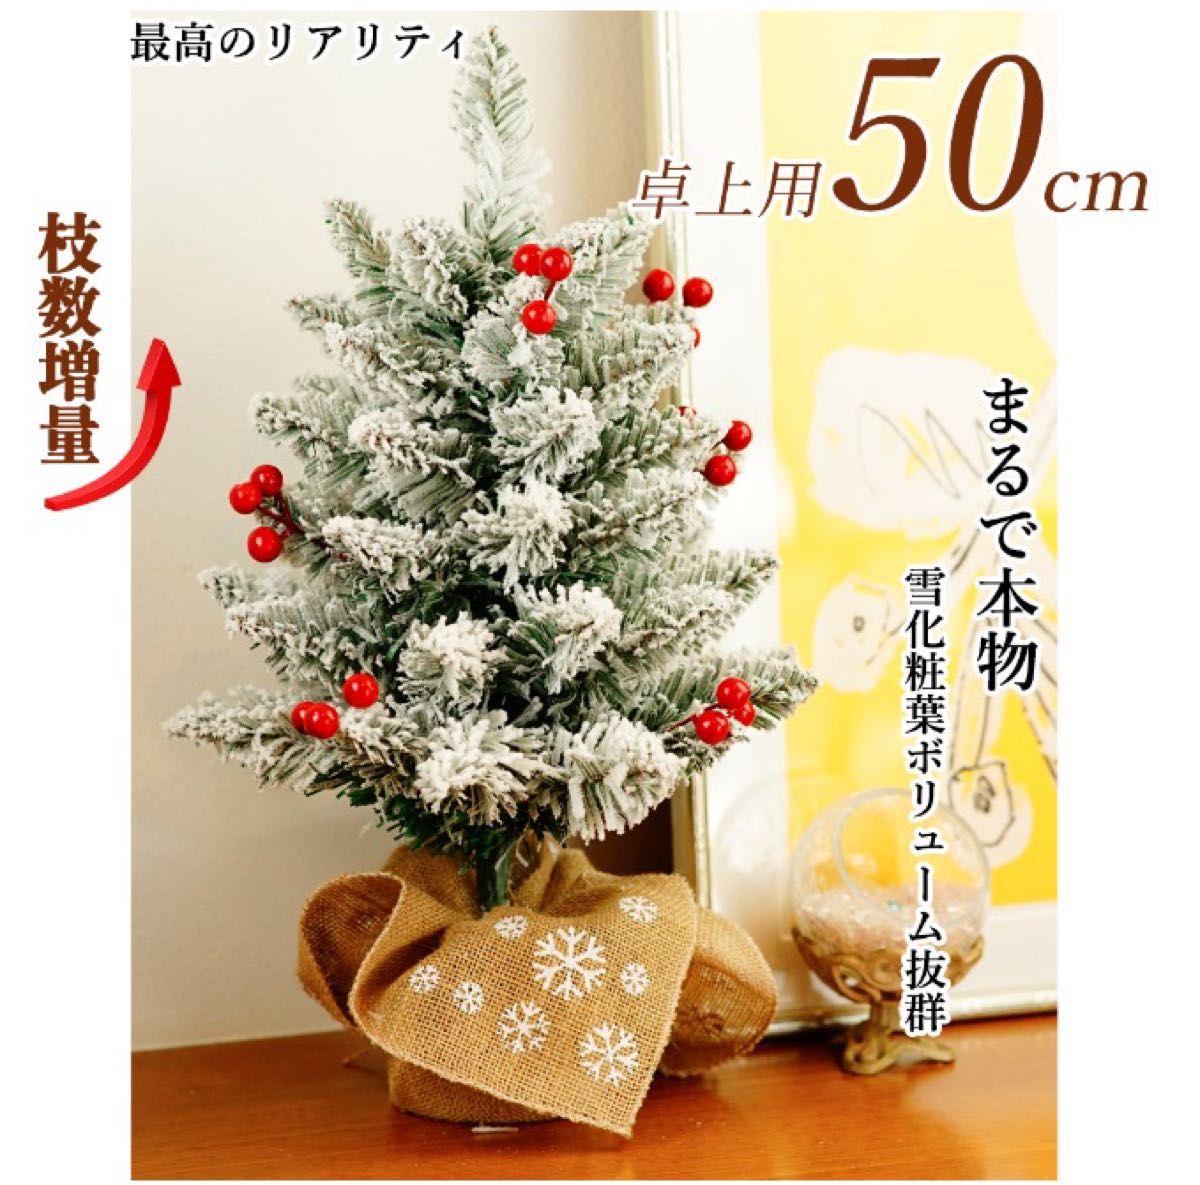 クリスマスツリー 卓上ツリー ミニツリー ツリー クリスマスツリー50cm クリスマス クリスマスツリー